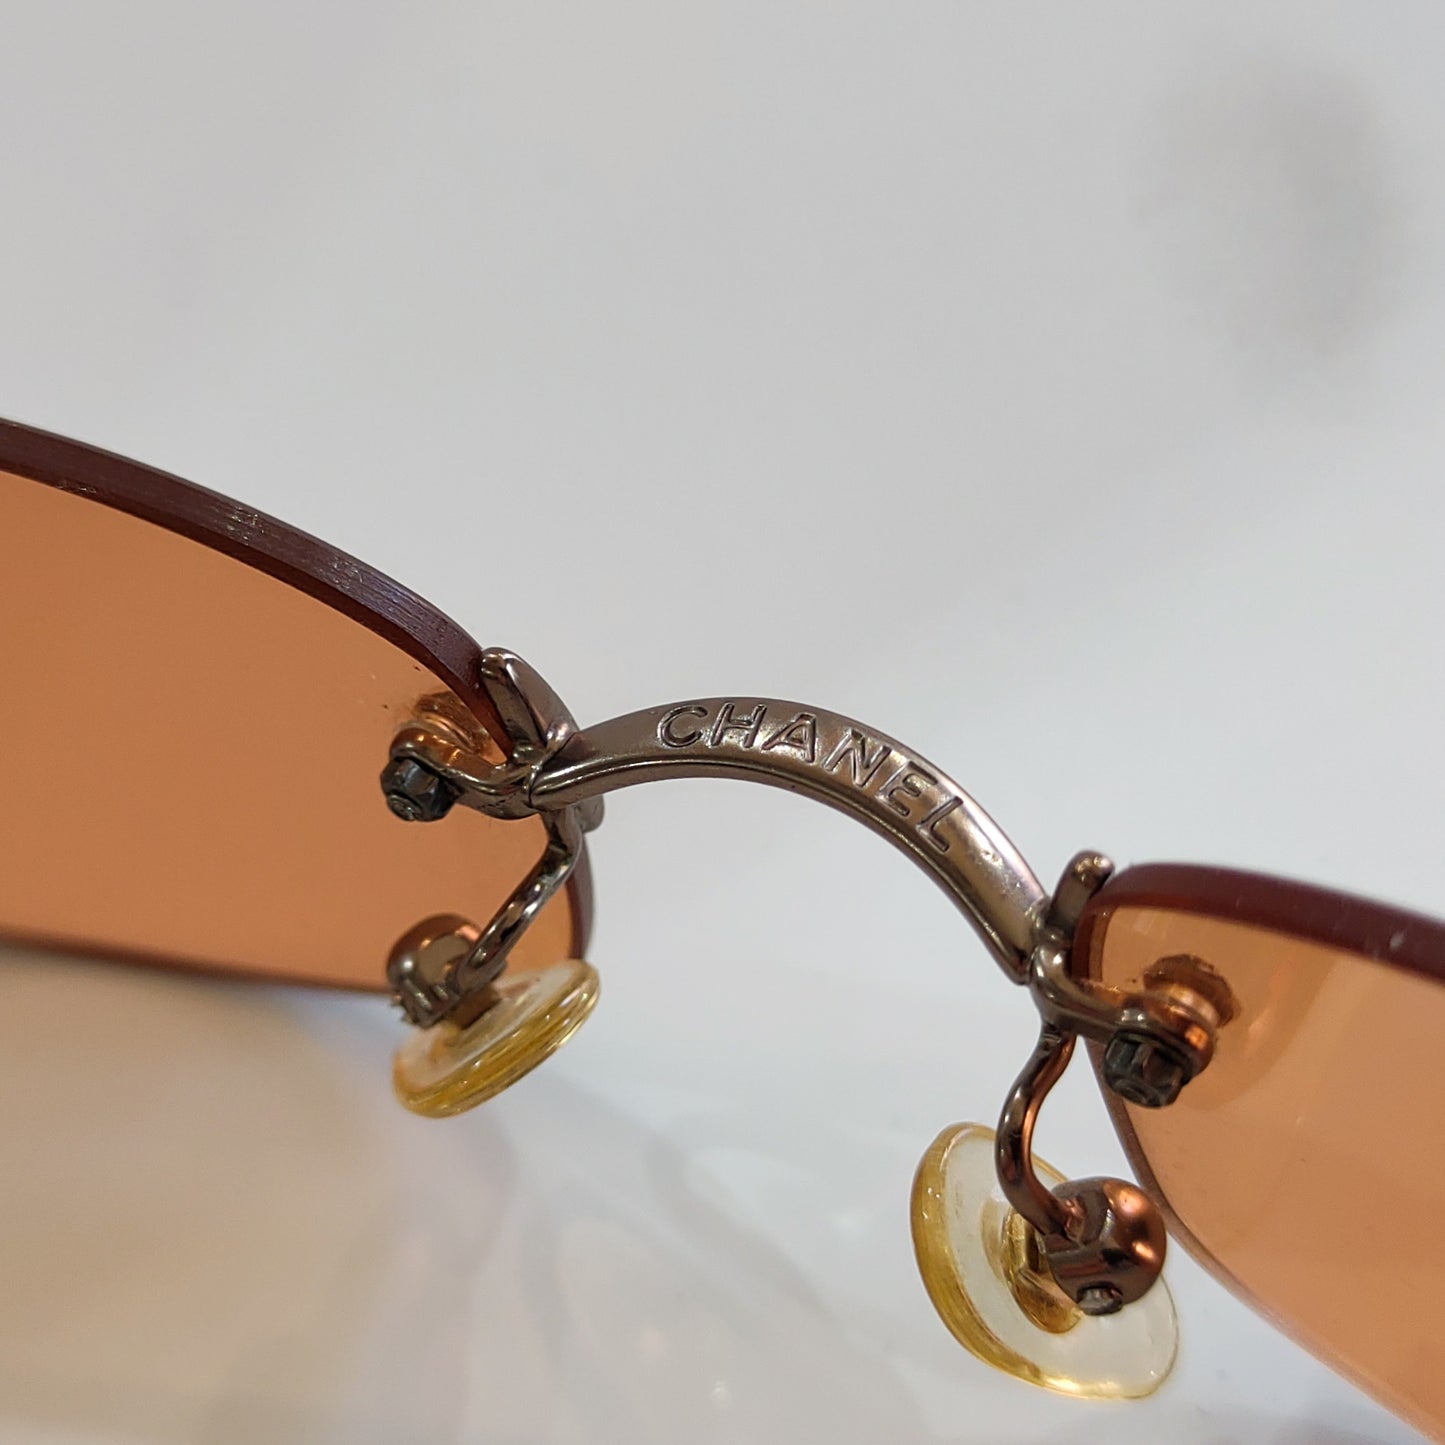 Chanel modello 4002 occhiali da sole lunetta brille y2k tonalità rimless